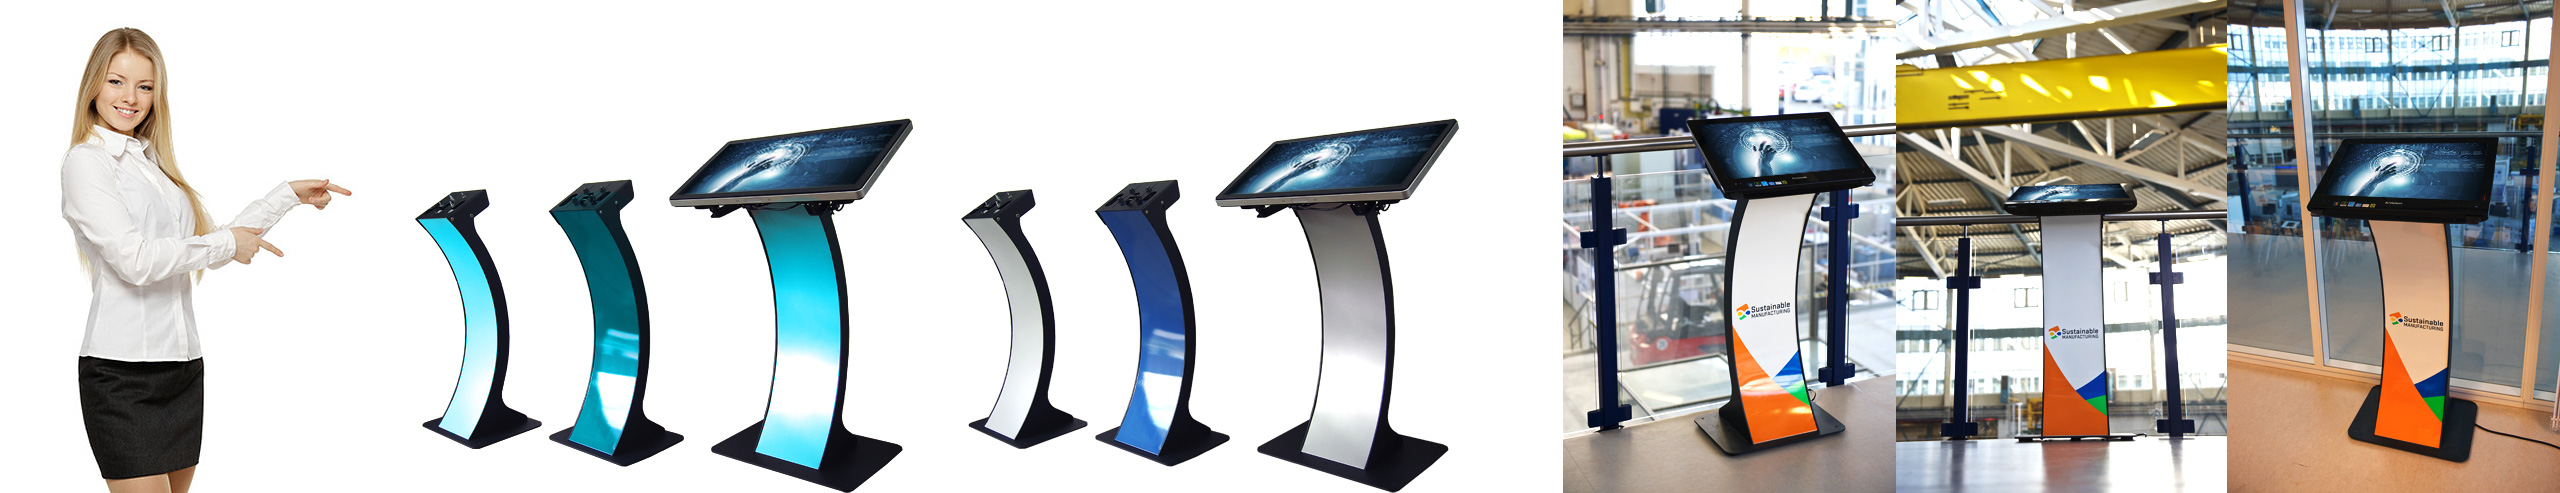 Kiosk- und Infoterminal und Monitorständer in einem - "easy pc stand" mit Blende in RAL-Wunschfarbe und Werbedruck